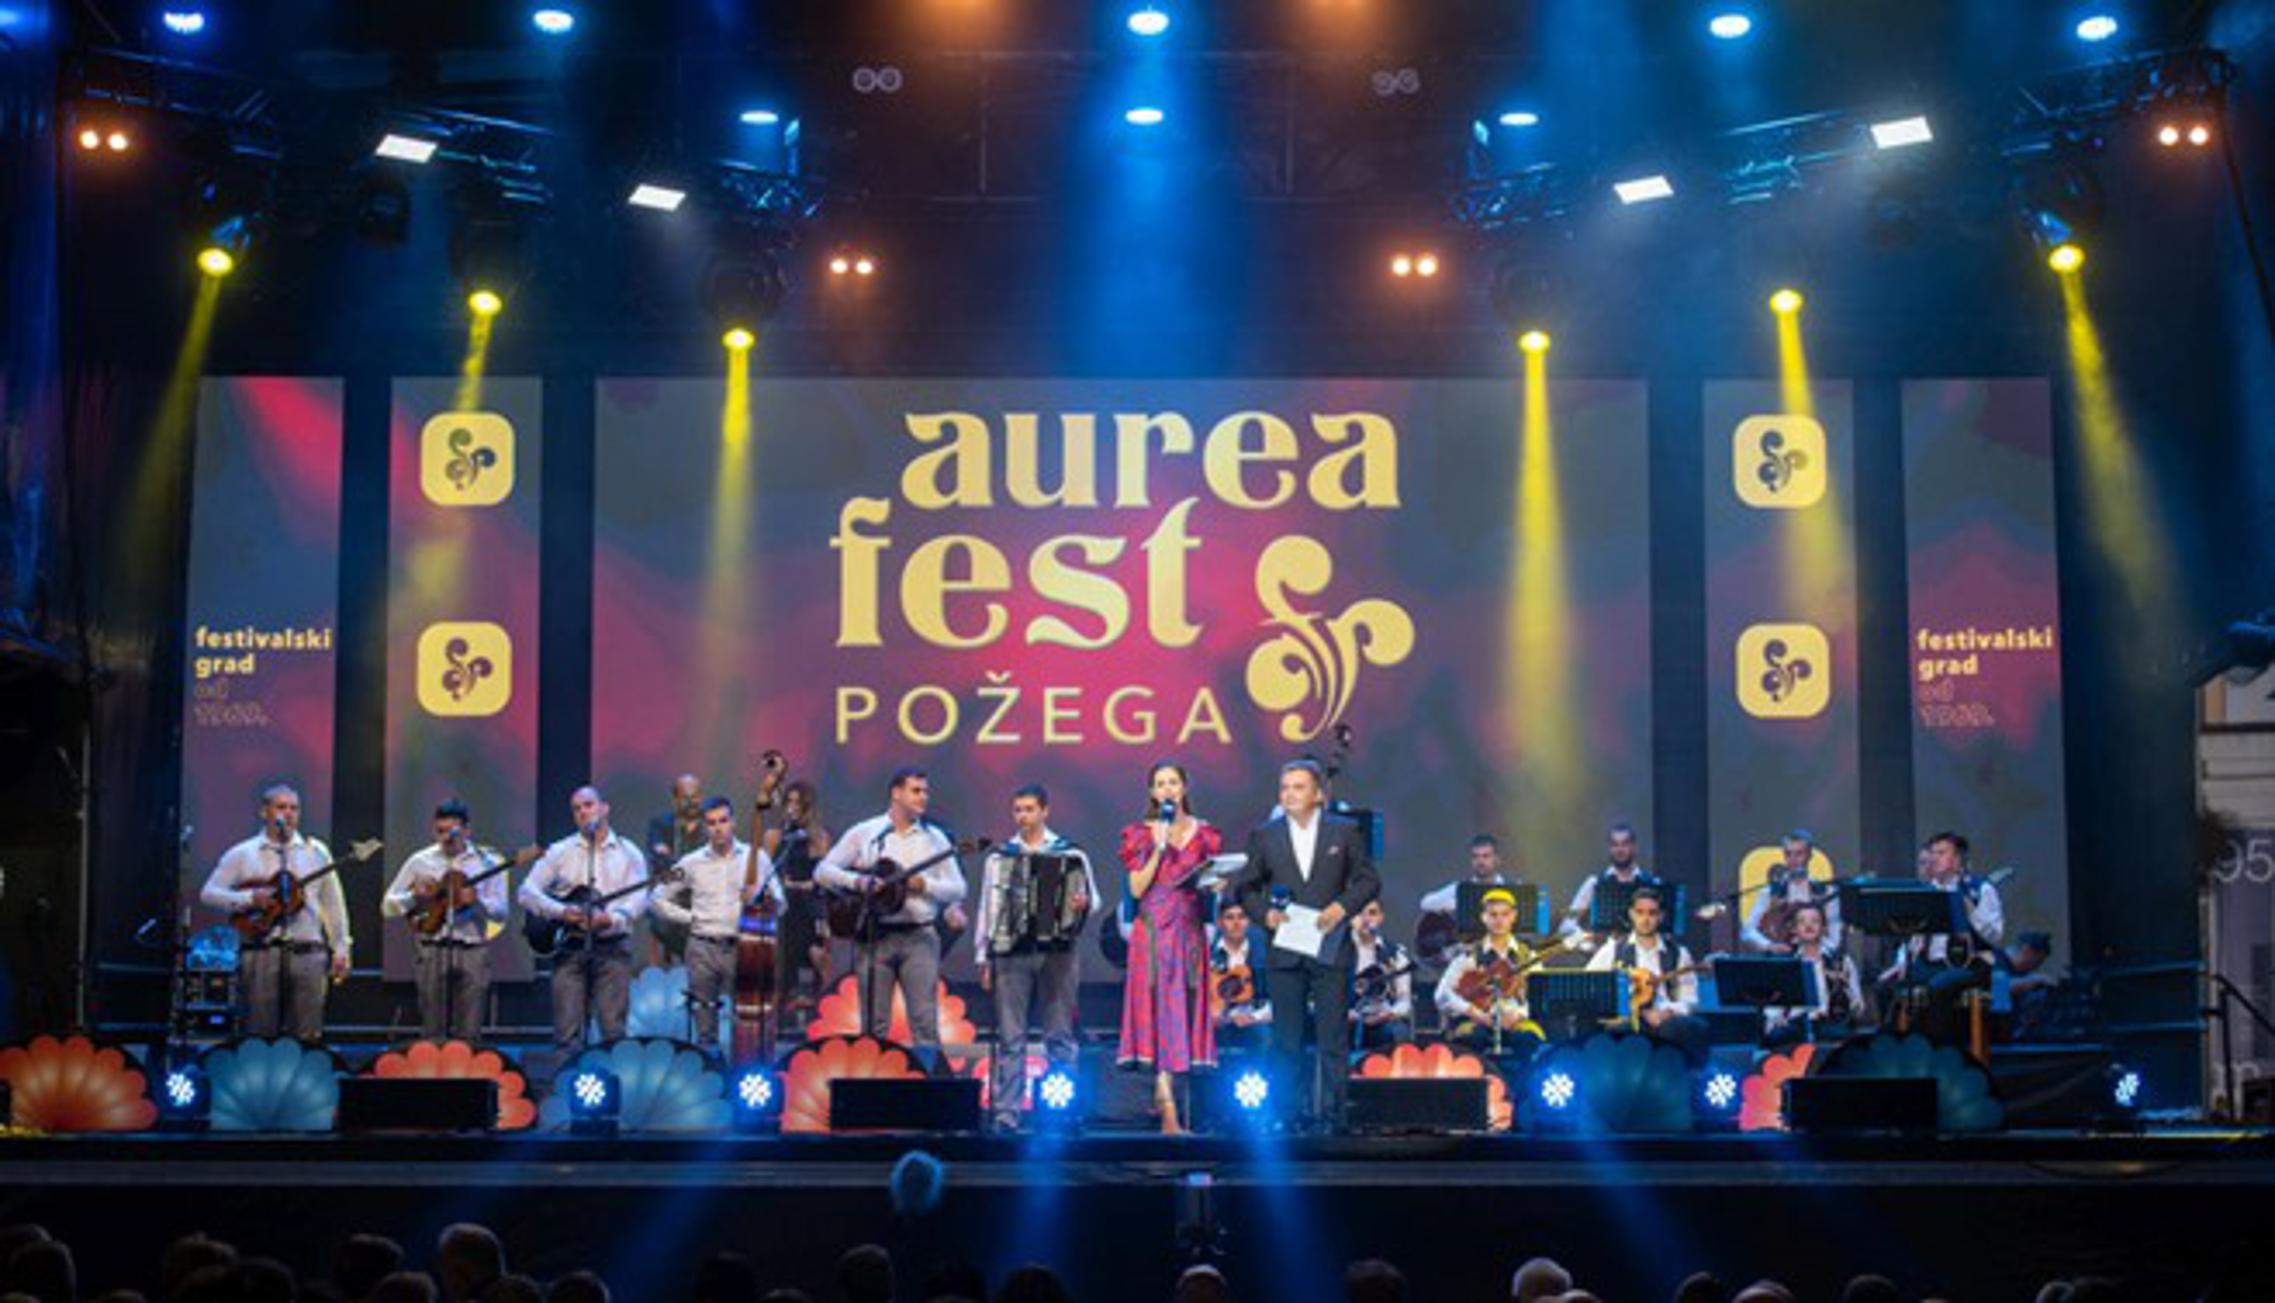 Jedan od najpoznatijih glazbenih festivala u Hrvatskoj, Aurea fest